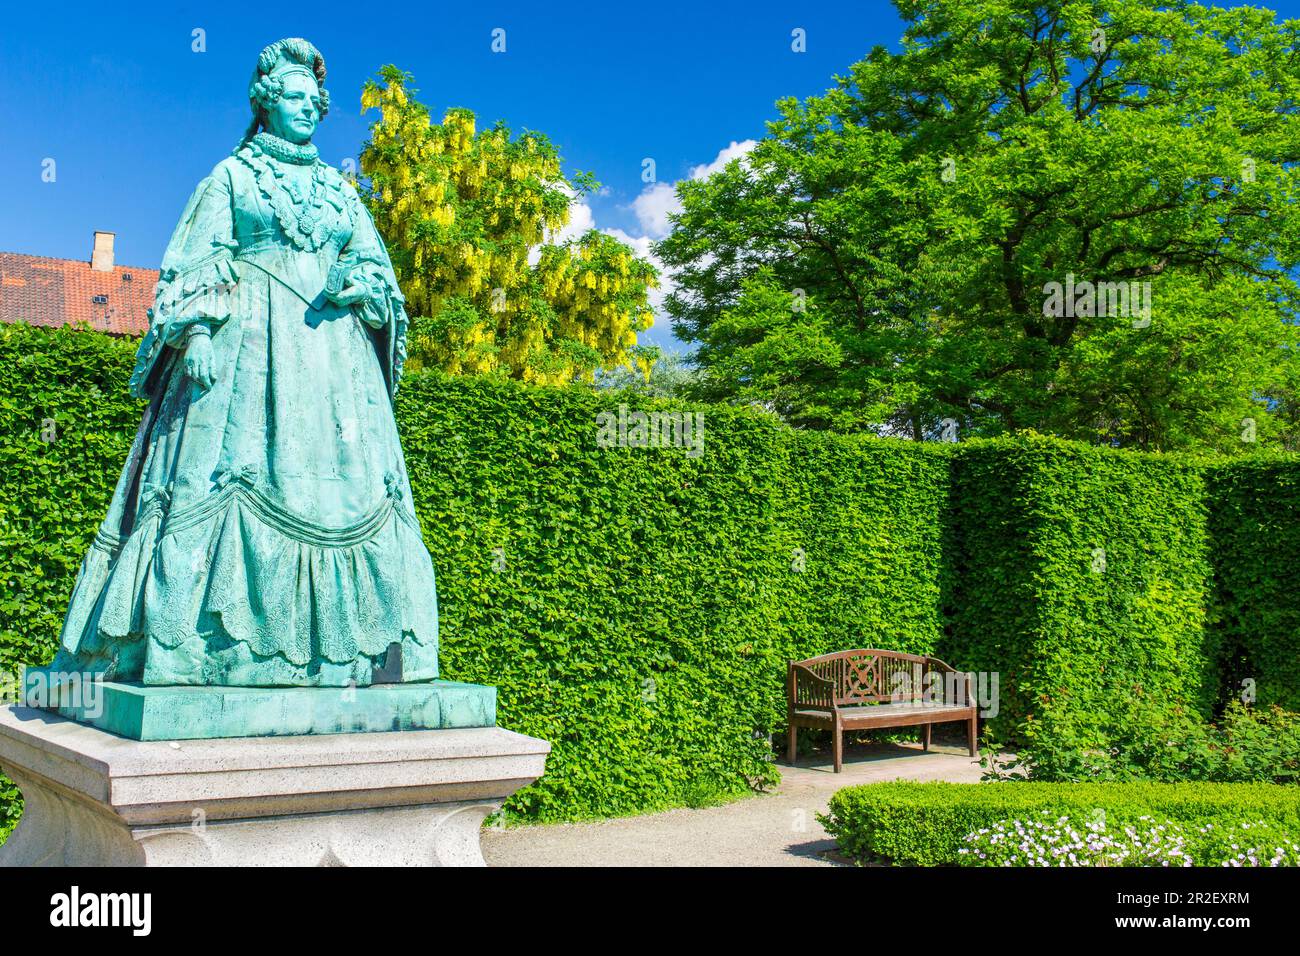 Royal Garden Rosenborg, Kongens Have, rosenhaven, statue of queen Caroline Amalie Augustenburg. Rosenborg Castle, Copenhagen, Zealand, Denmark Stock Photo